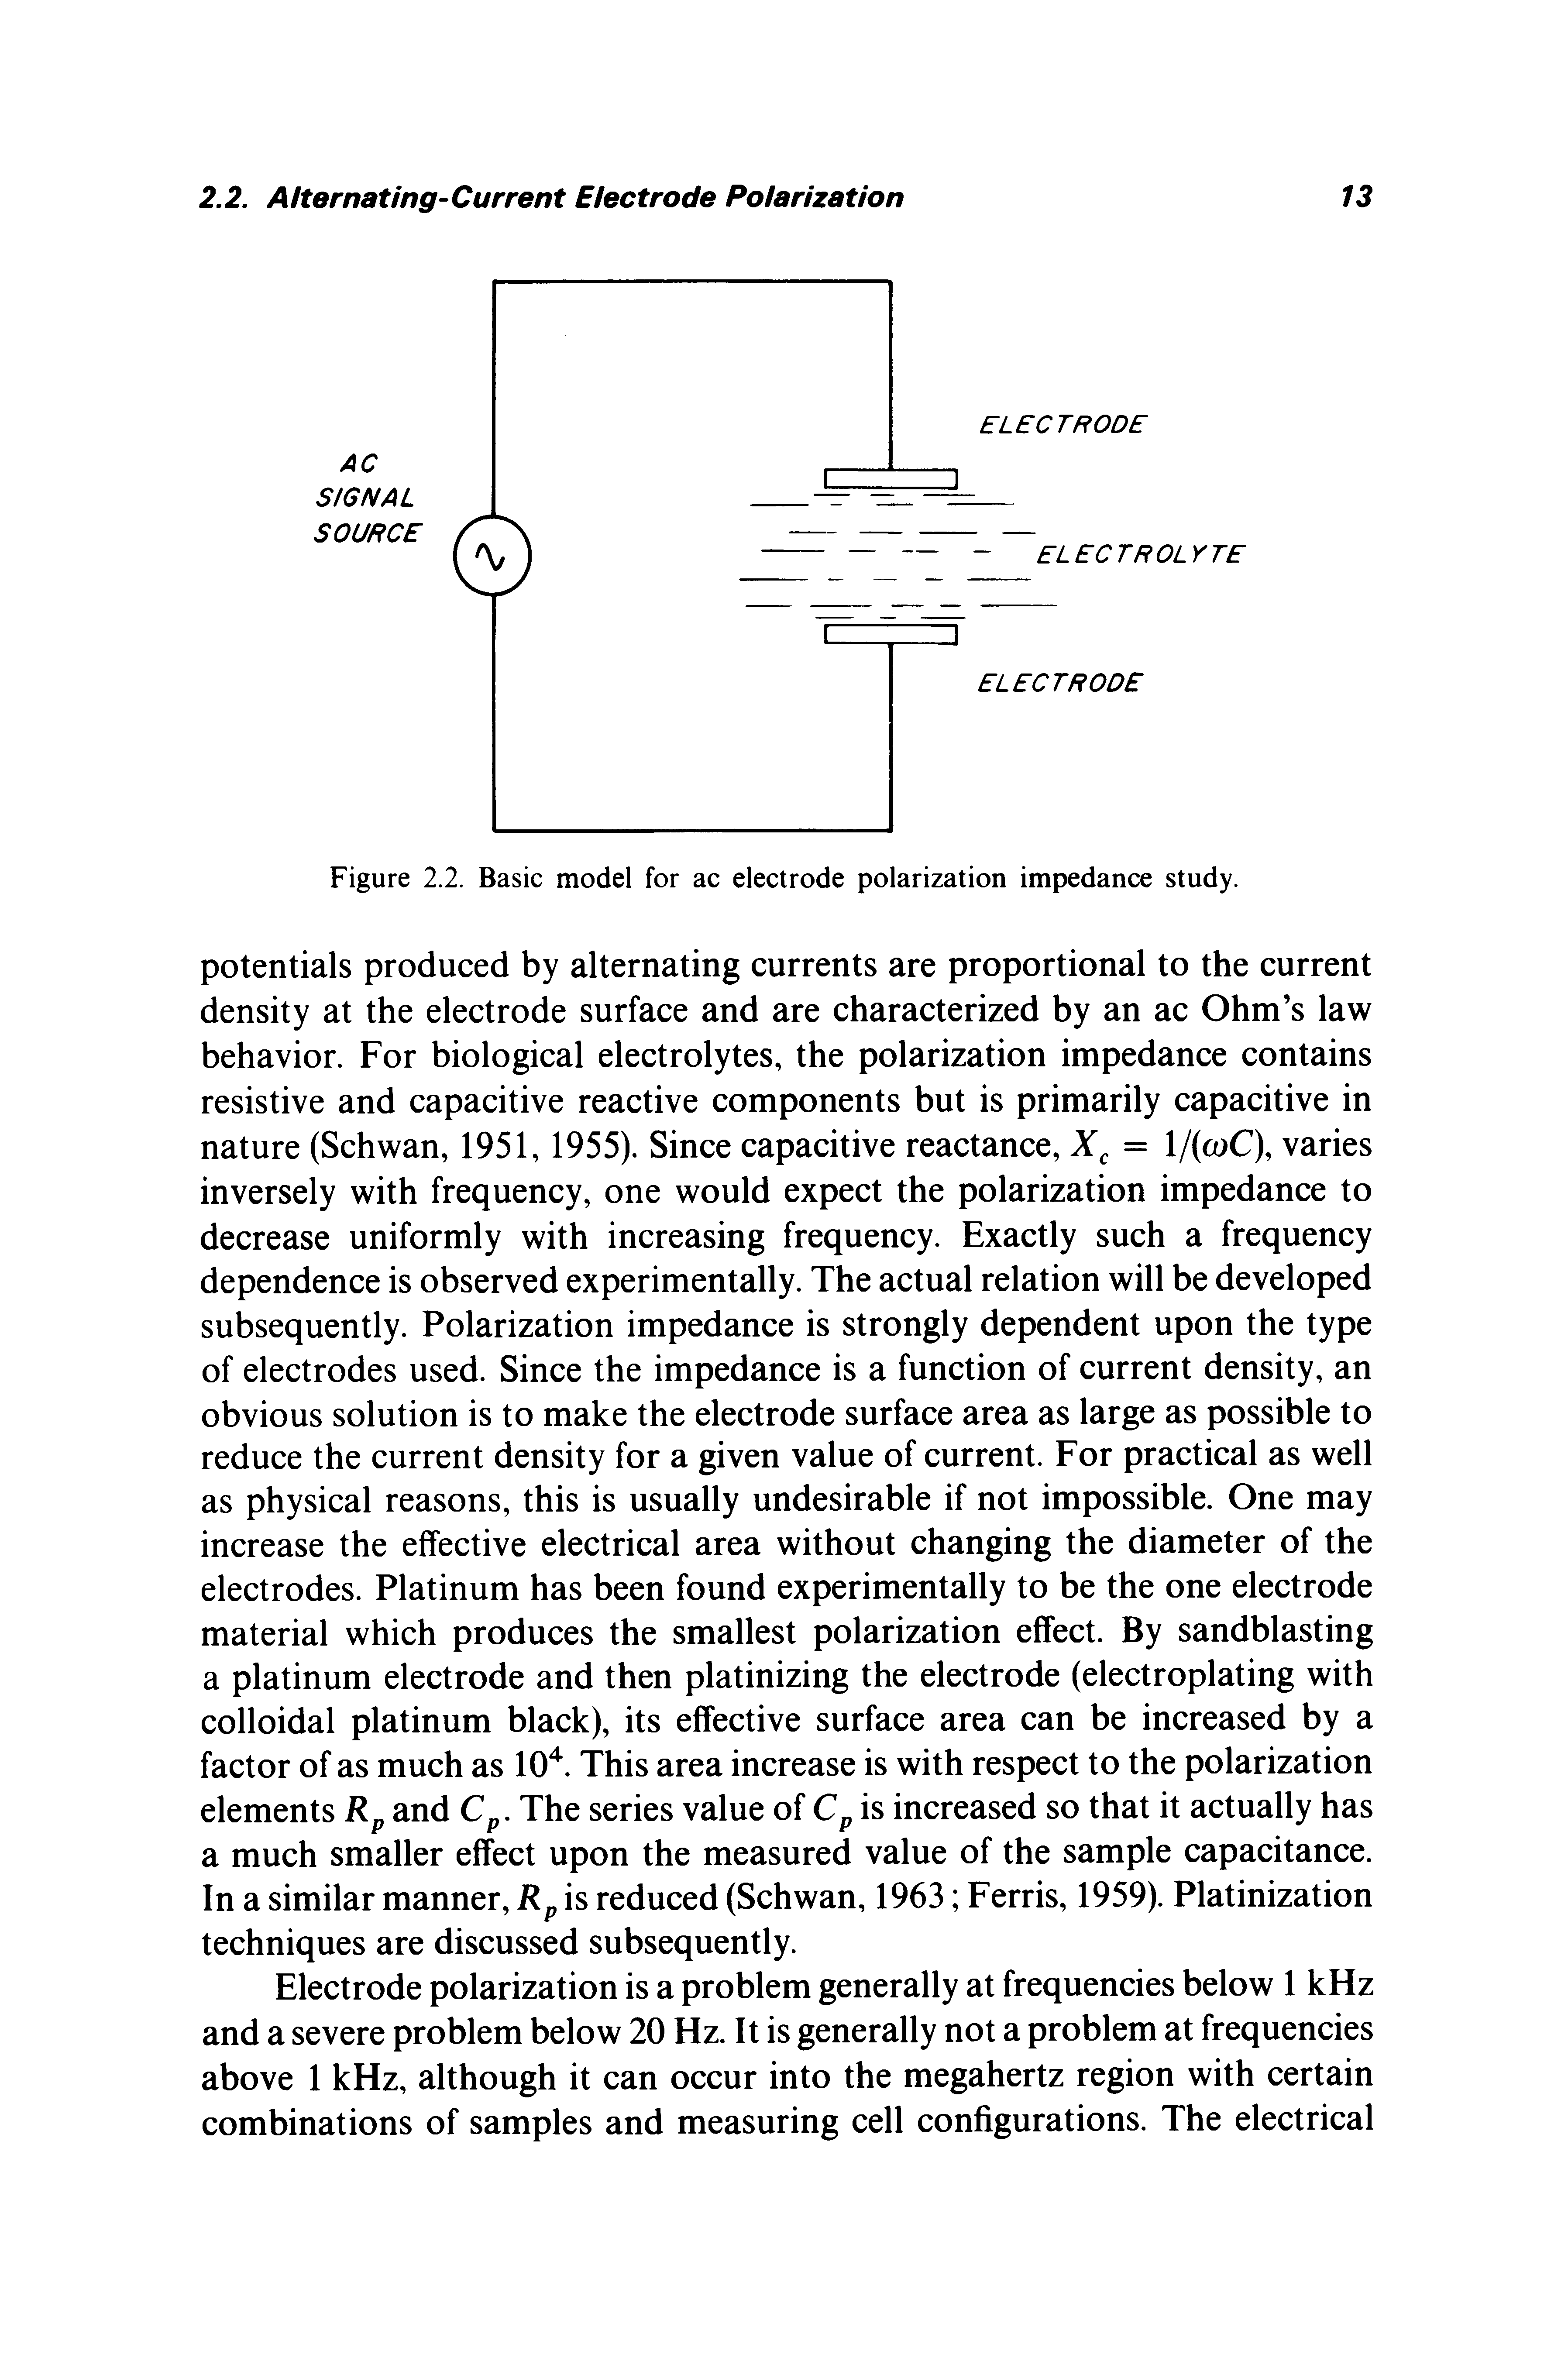 Figure 2.2. Basic model for ac electrode polarization impedance study.